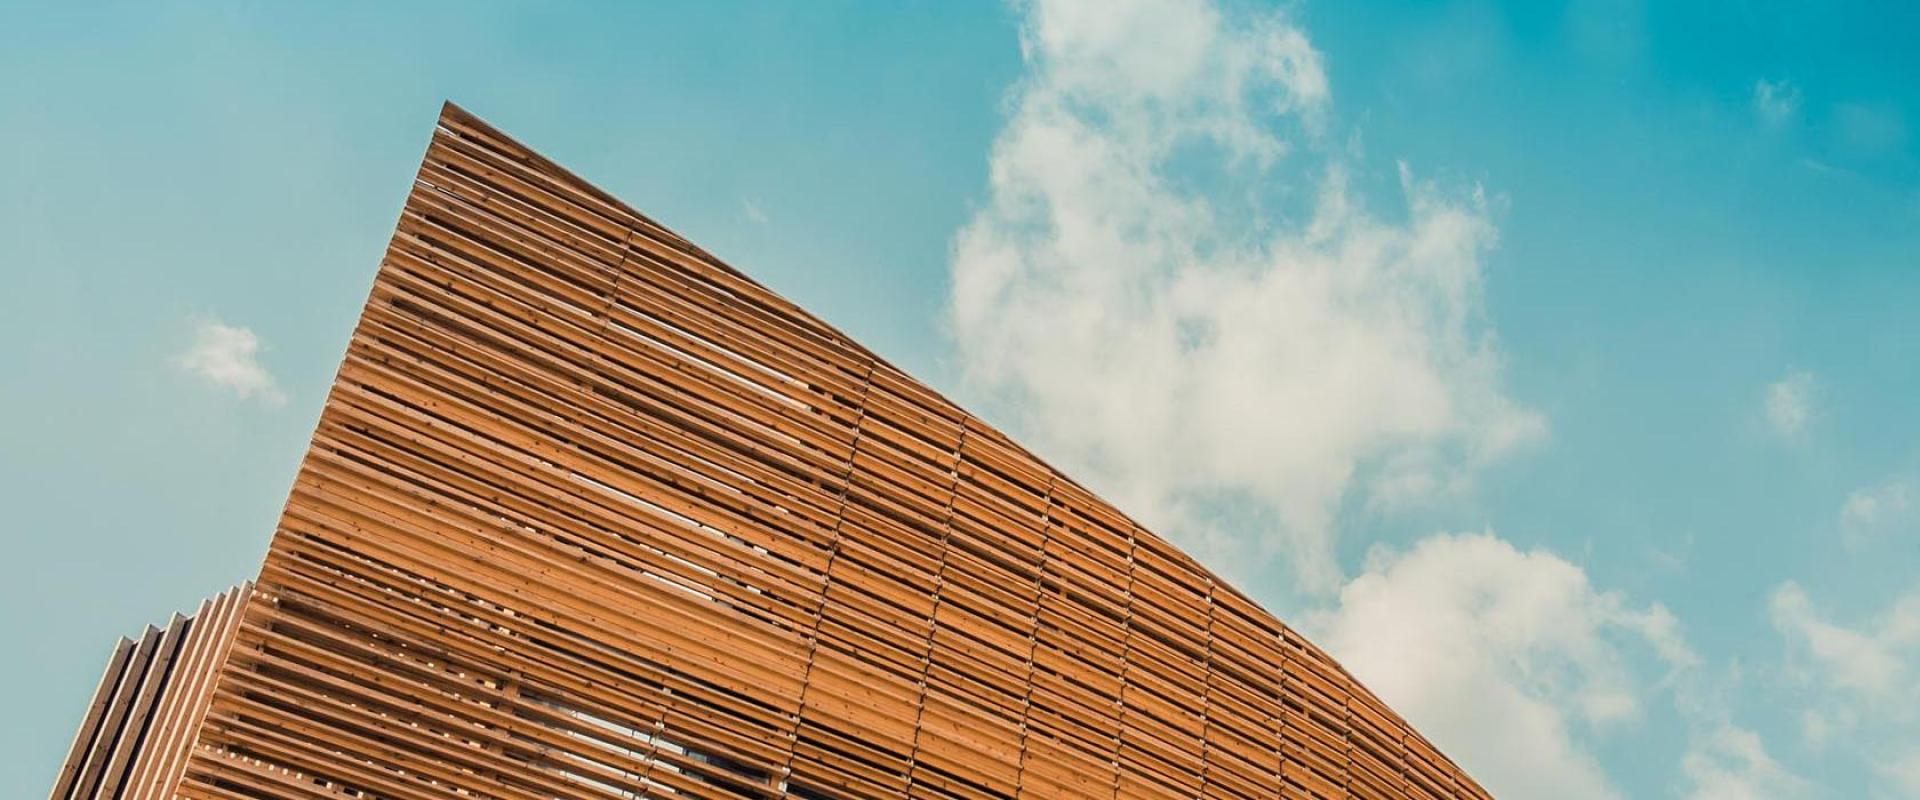 Edilizia in legno: grattacieli innovativi e sostenibili: Immagine